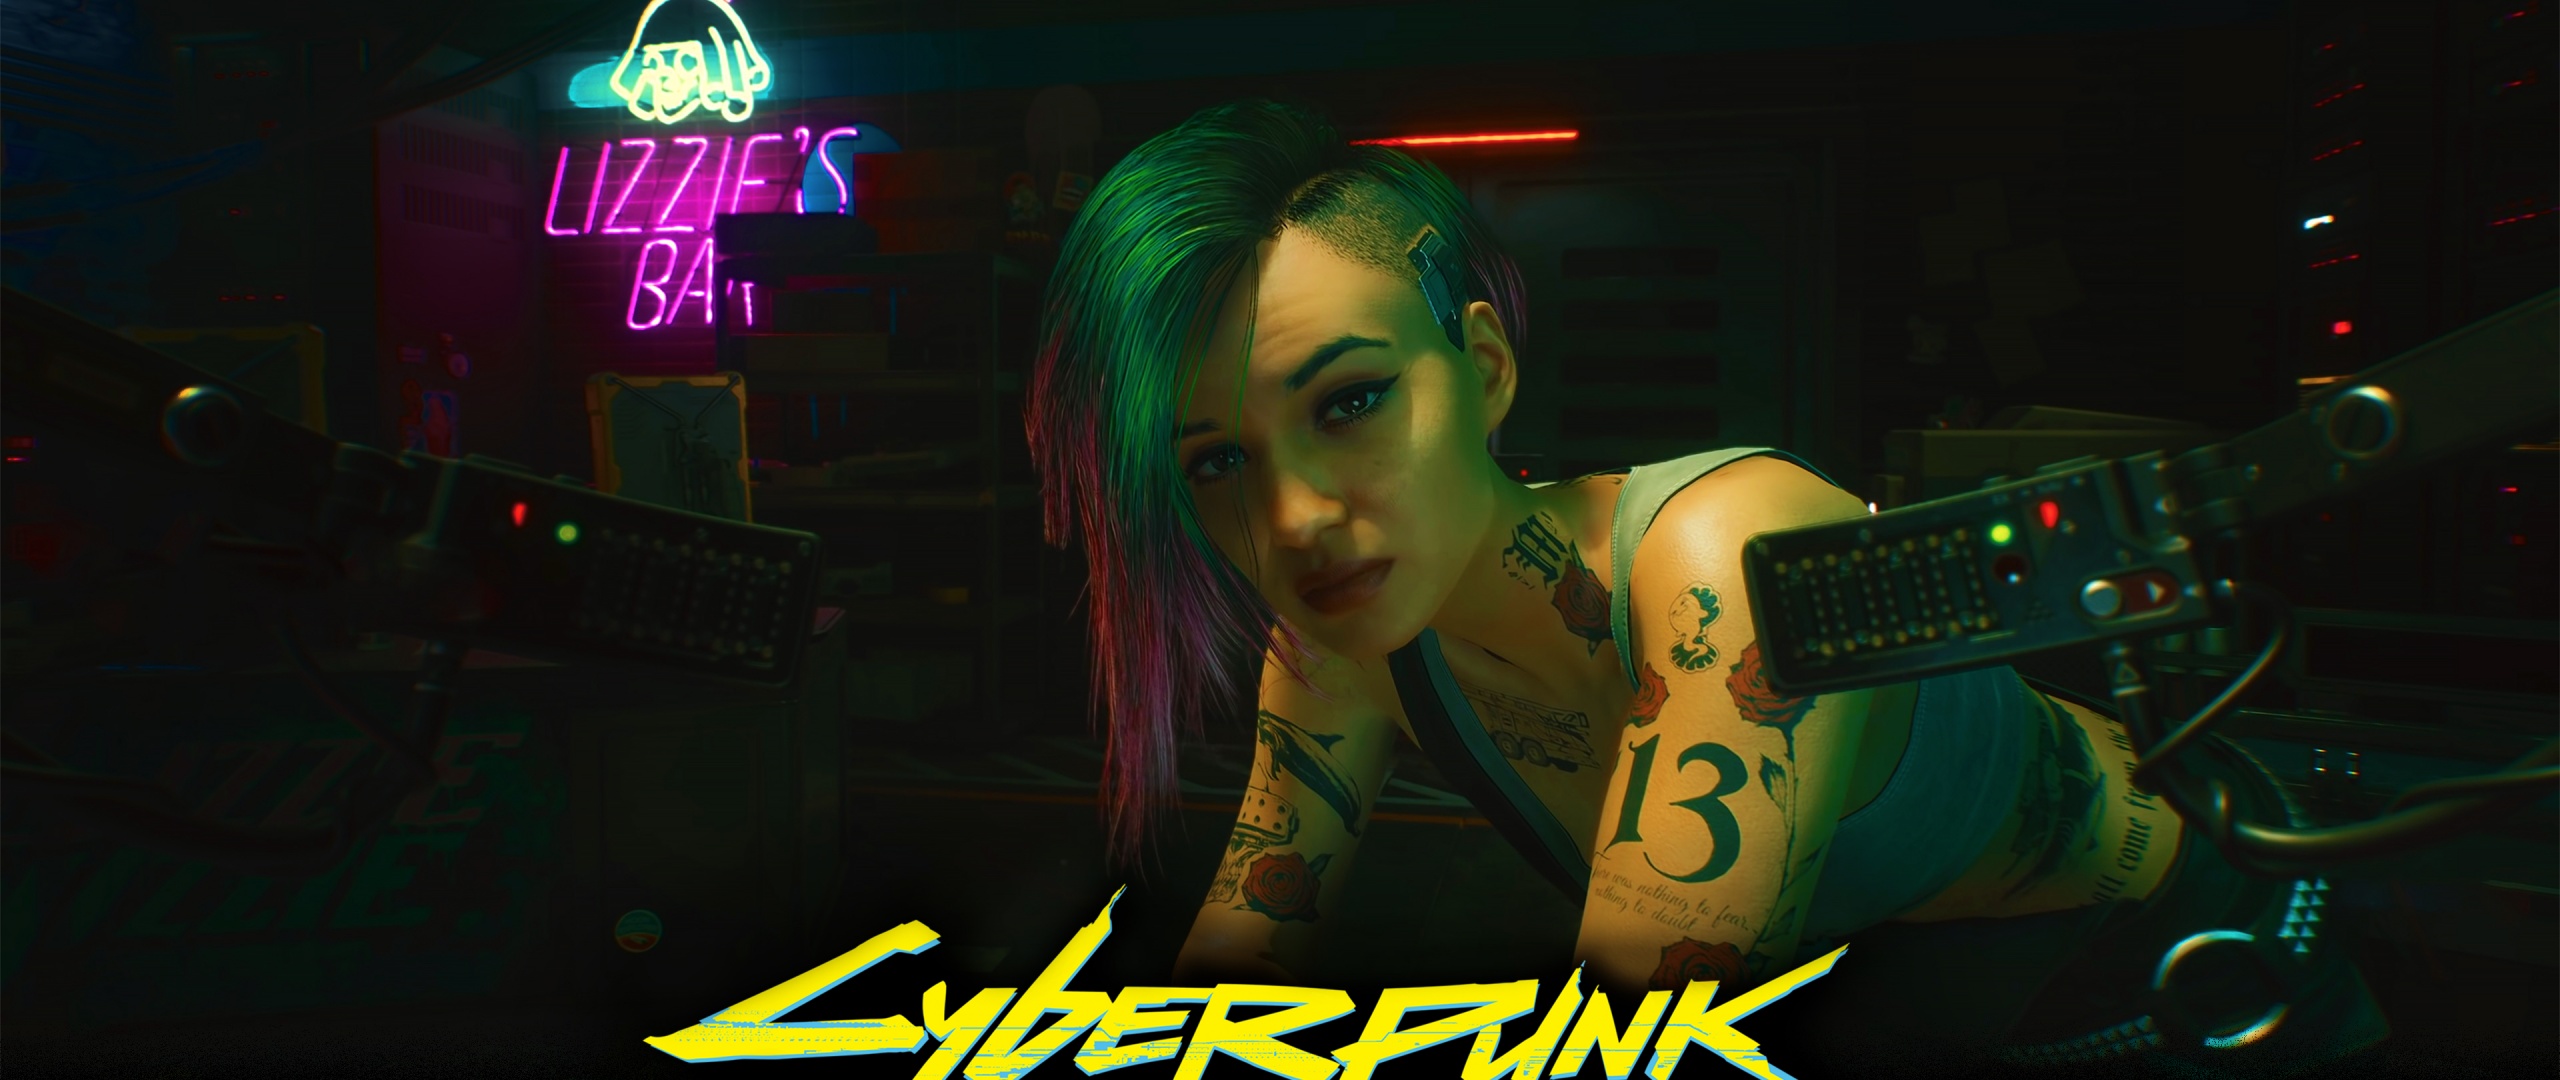 Với hình nền Cyberpunk 2077 Wallpaper, bạn sẽ được chiêm ngưỡng những cảnh quan độc đáo và tuyệt đẹp. Nét đặc trưng của trò chơi này chính là sự hòa trộn giữa yếu tố khoa học viễn tưởng và tương lai đen tối.